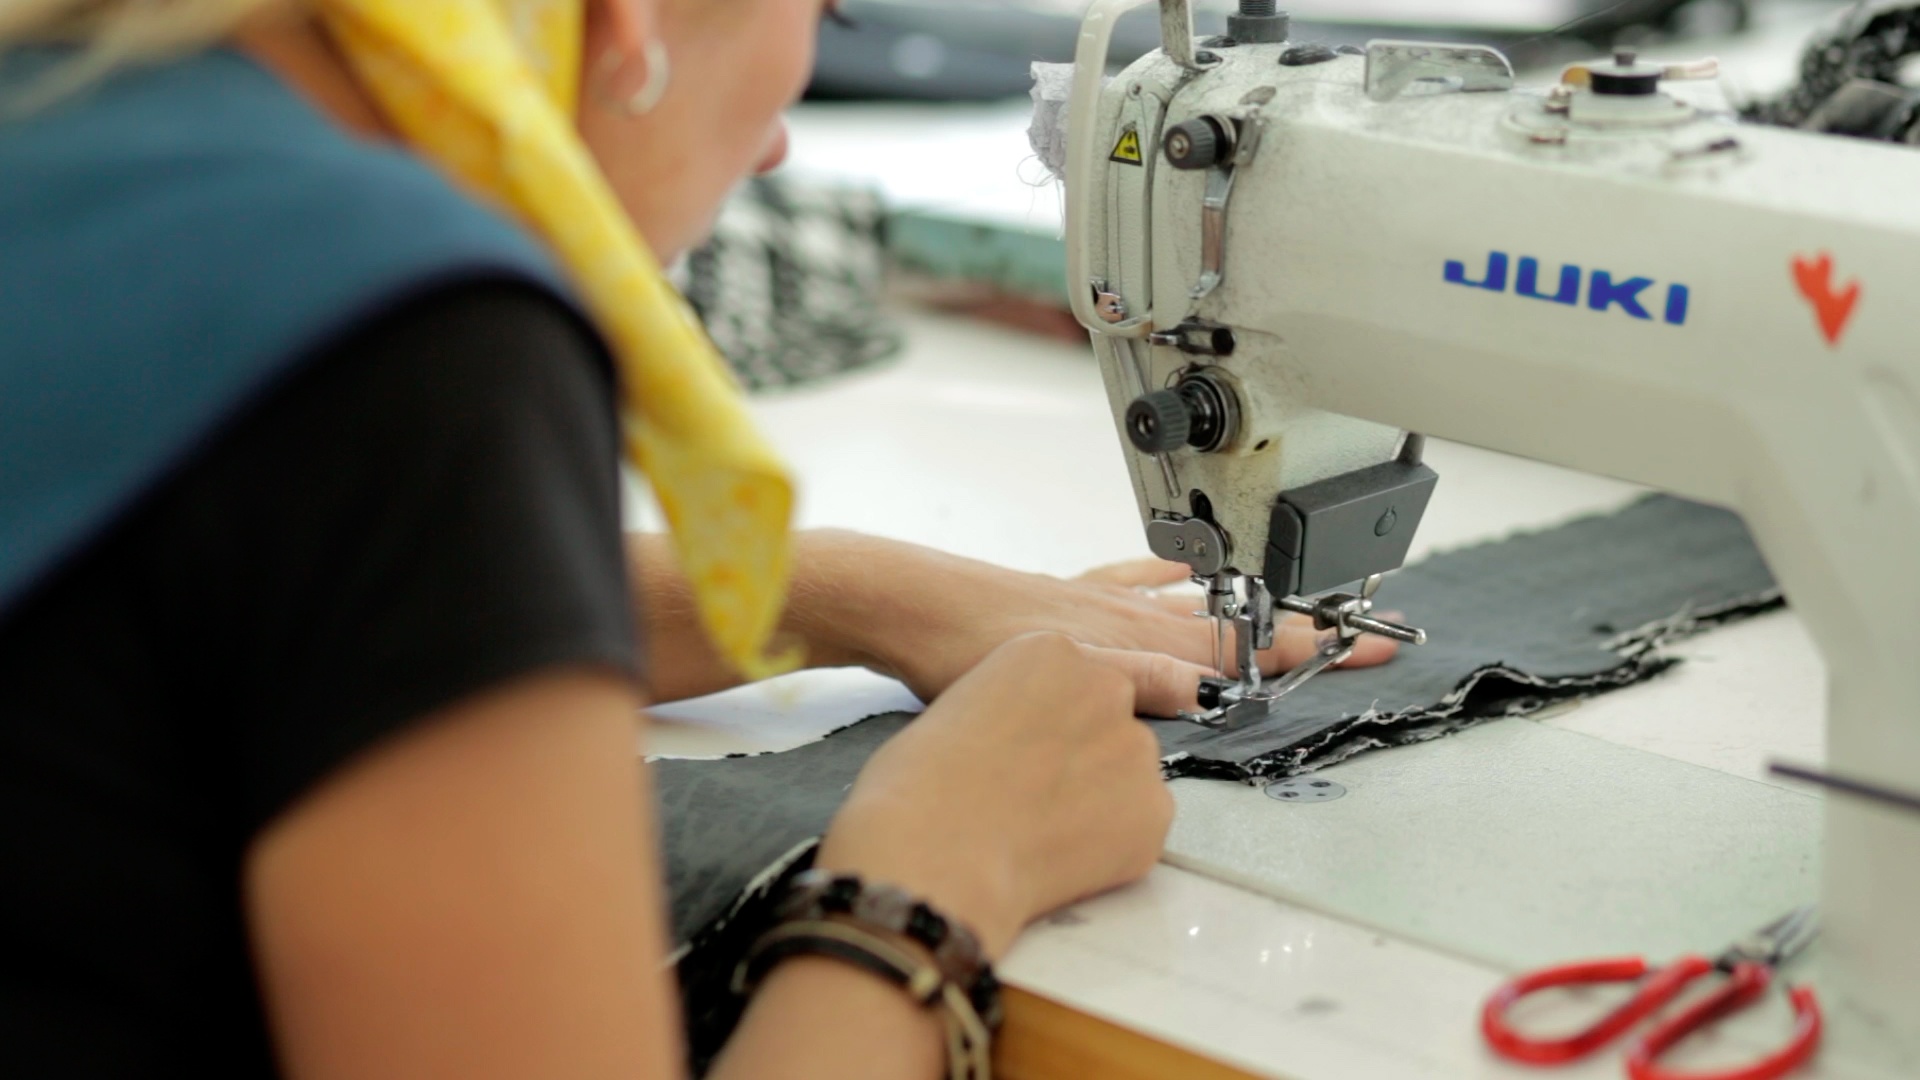 ОЛТЕКС расширяет производство и увеличивает объем поставок молодежной женской одежды в страны ЕС